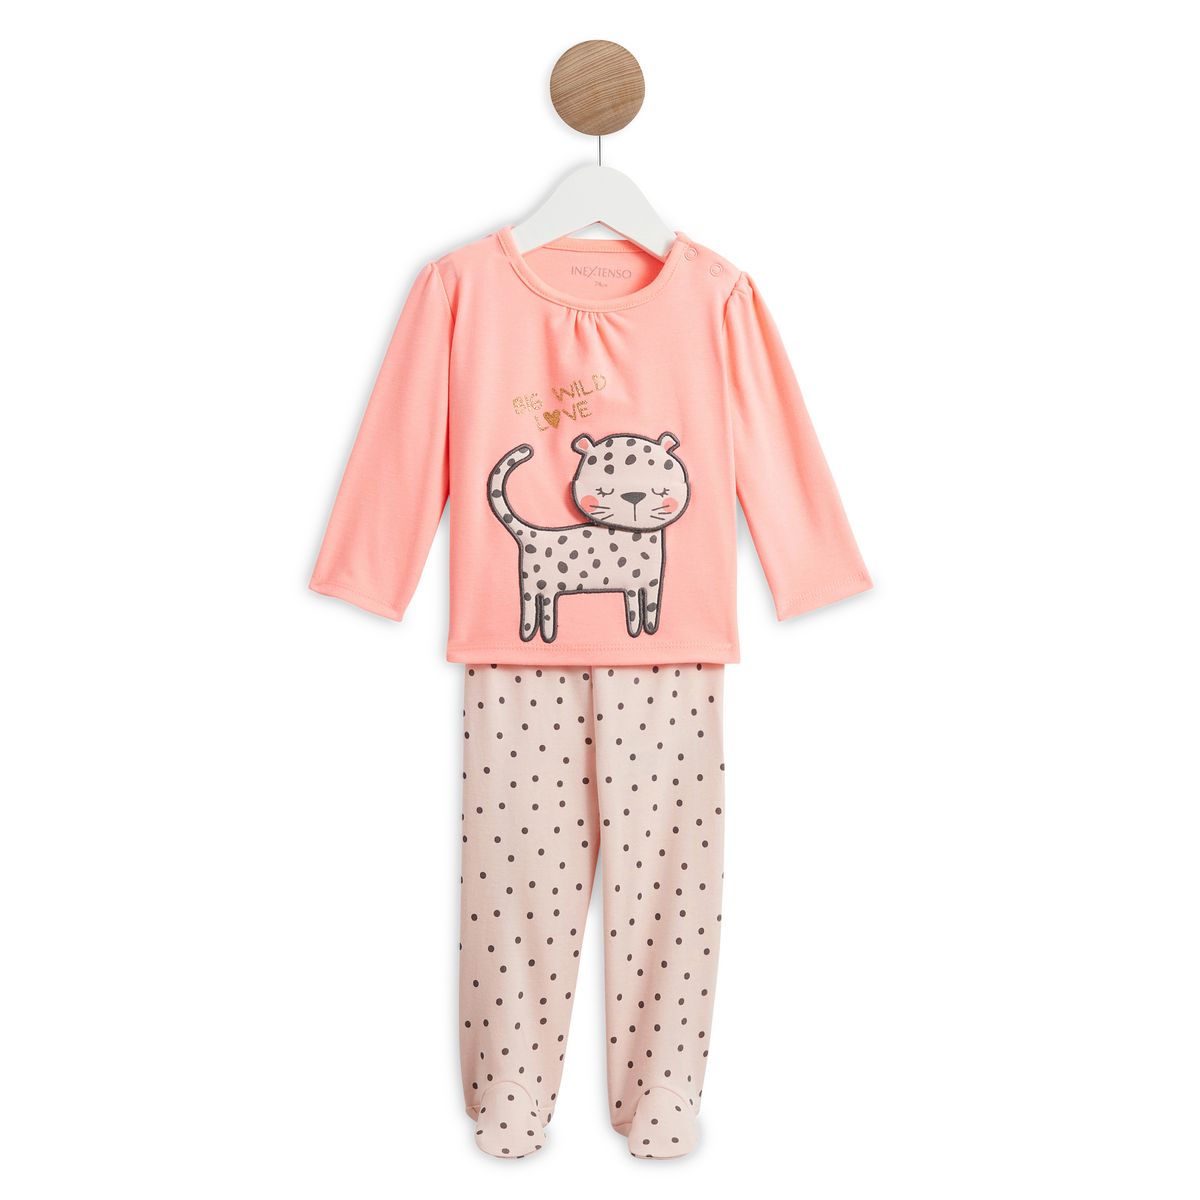 INEXTENSO Pyjama chat bébé fille